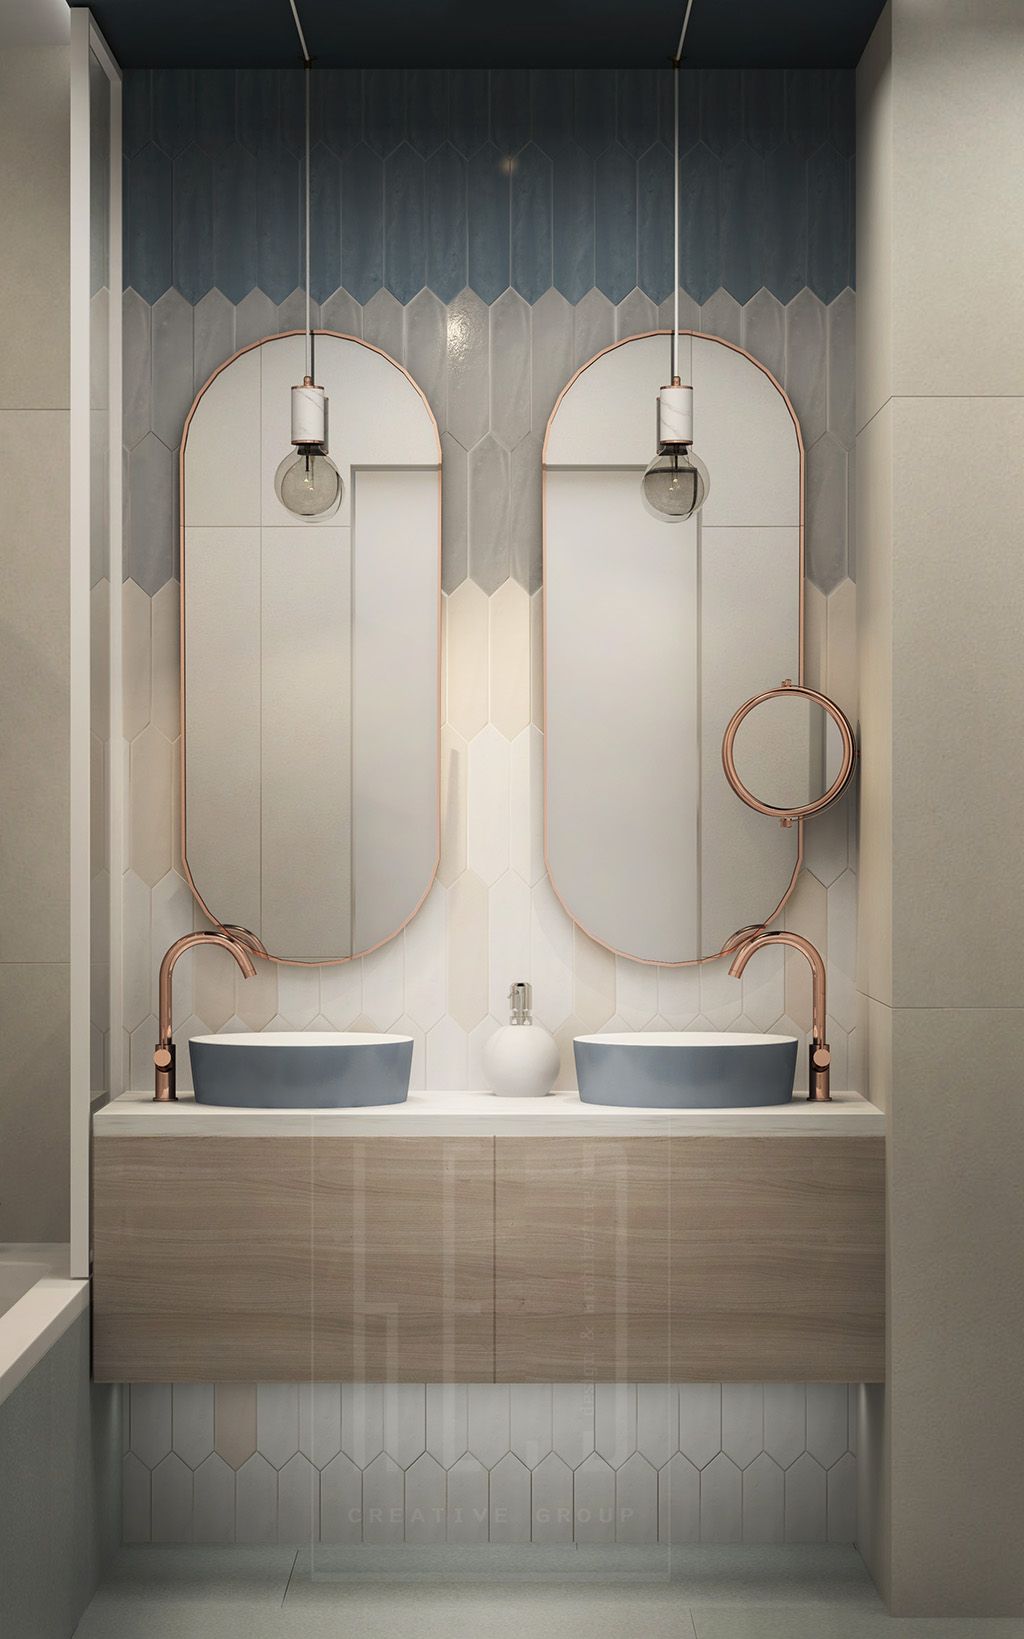 40 Double Sink Bathroom Vanities, Double Vanity For Small Bathroom